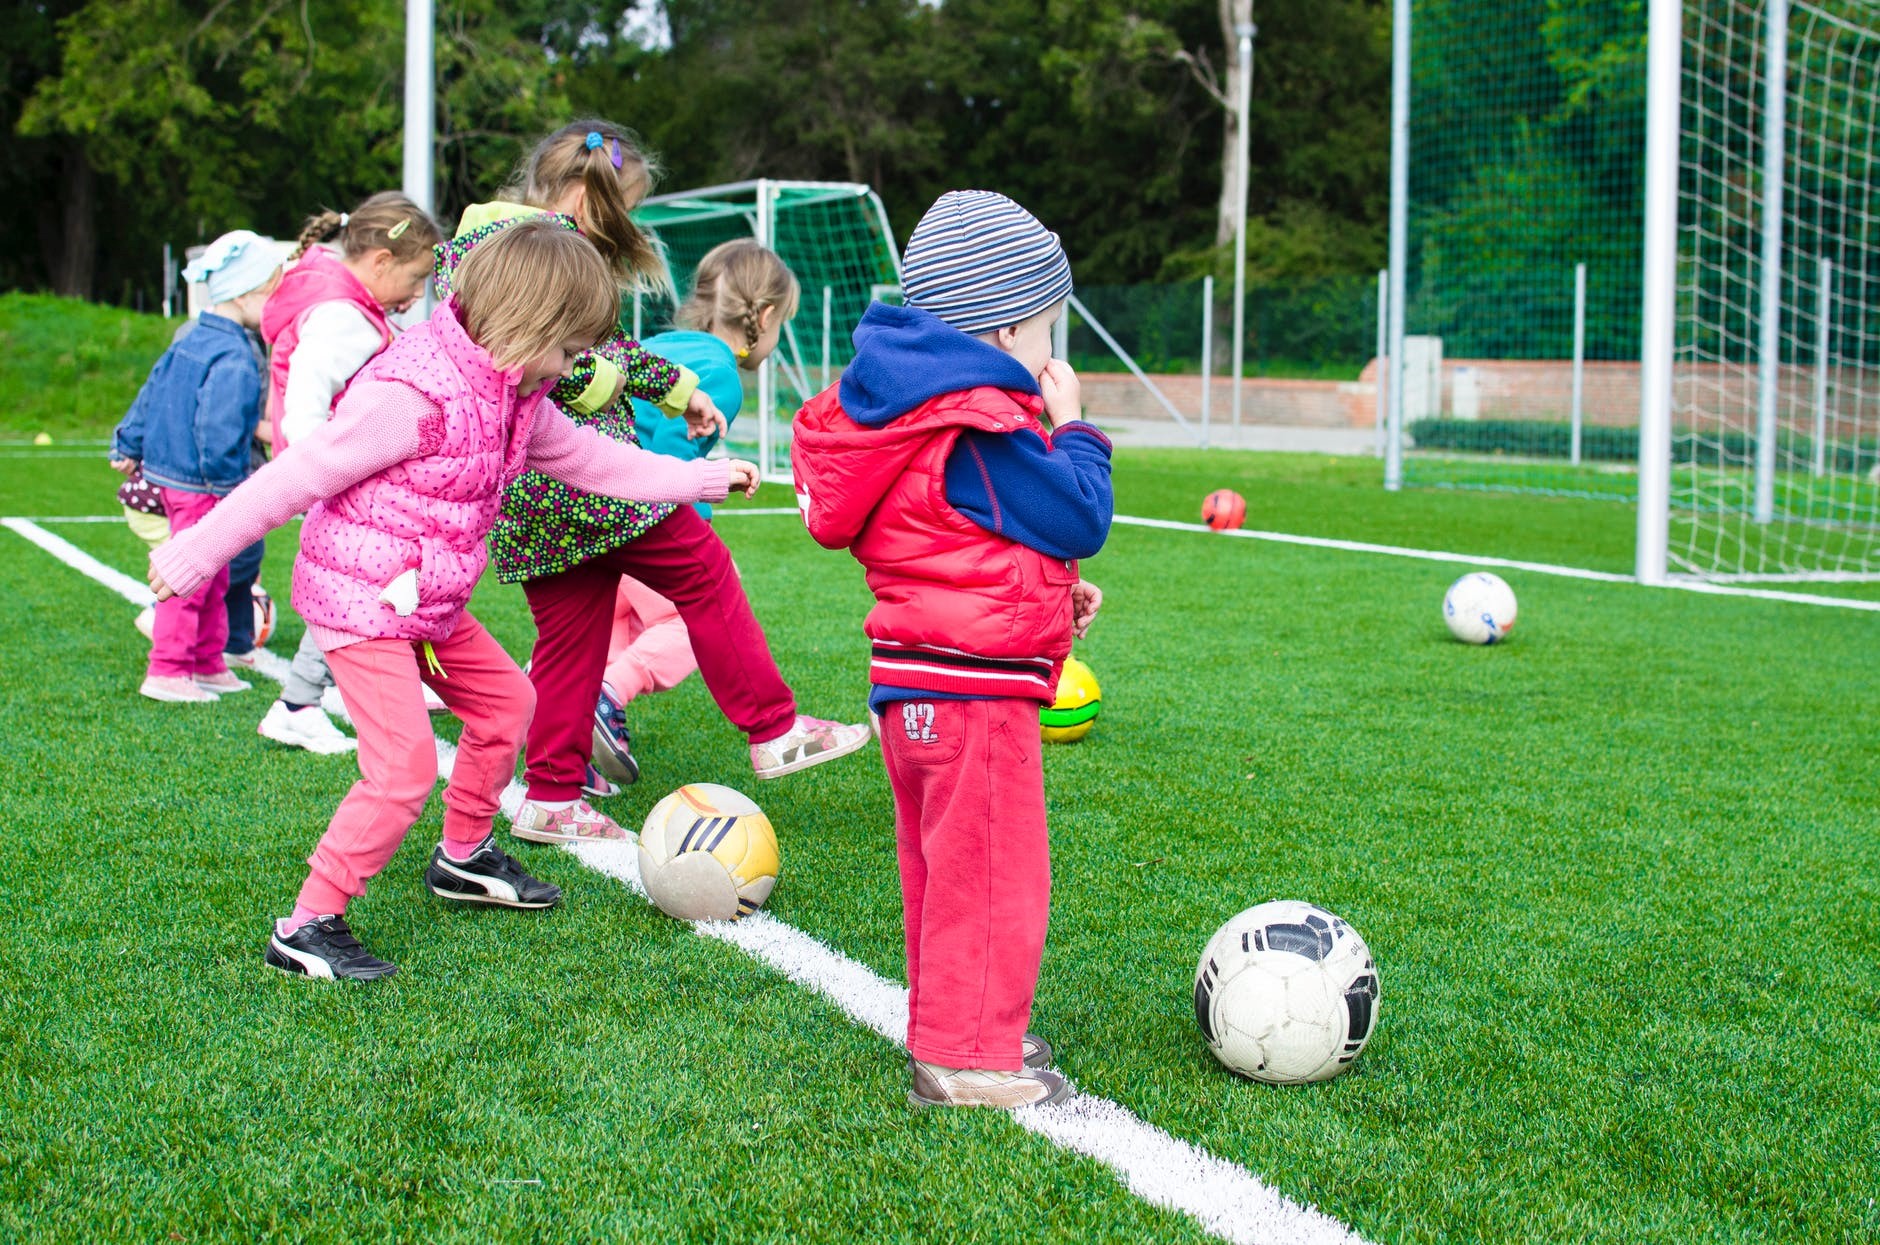 Bóng đá là môn thể thao phổ biến và dễ dàng cho các bé luyện tập để tăng chiều cao